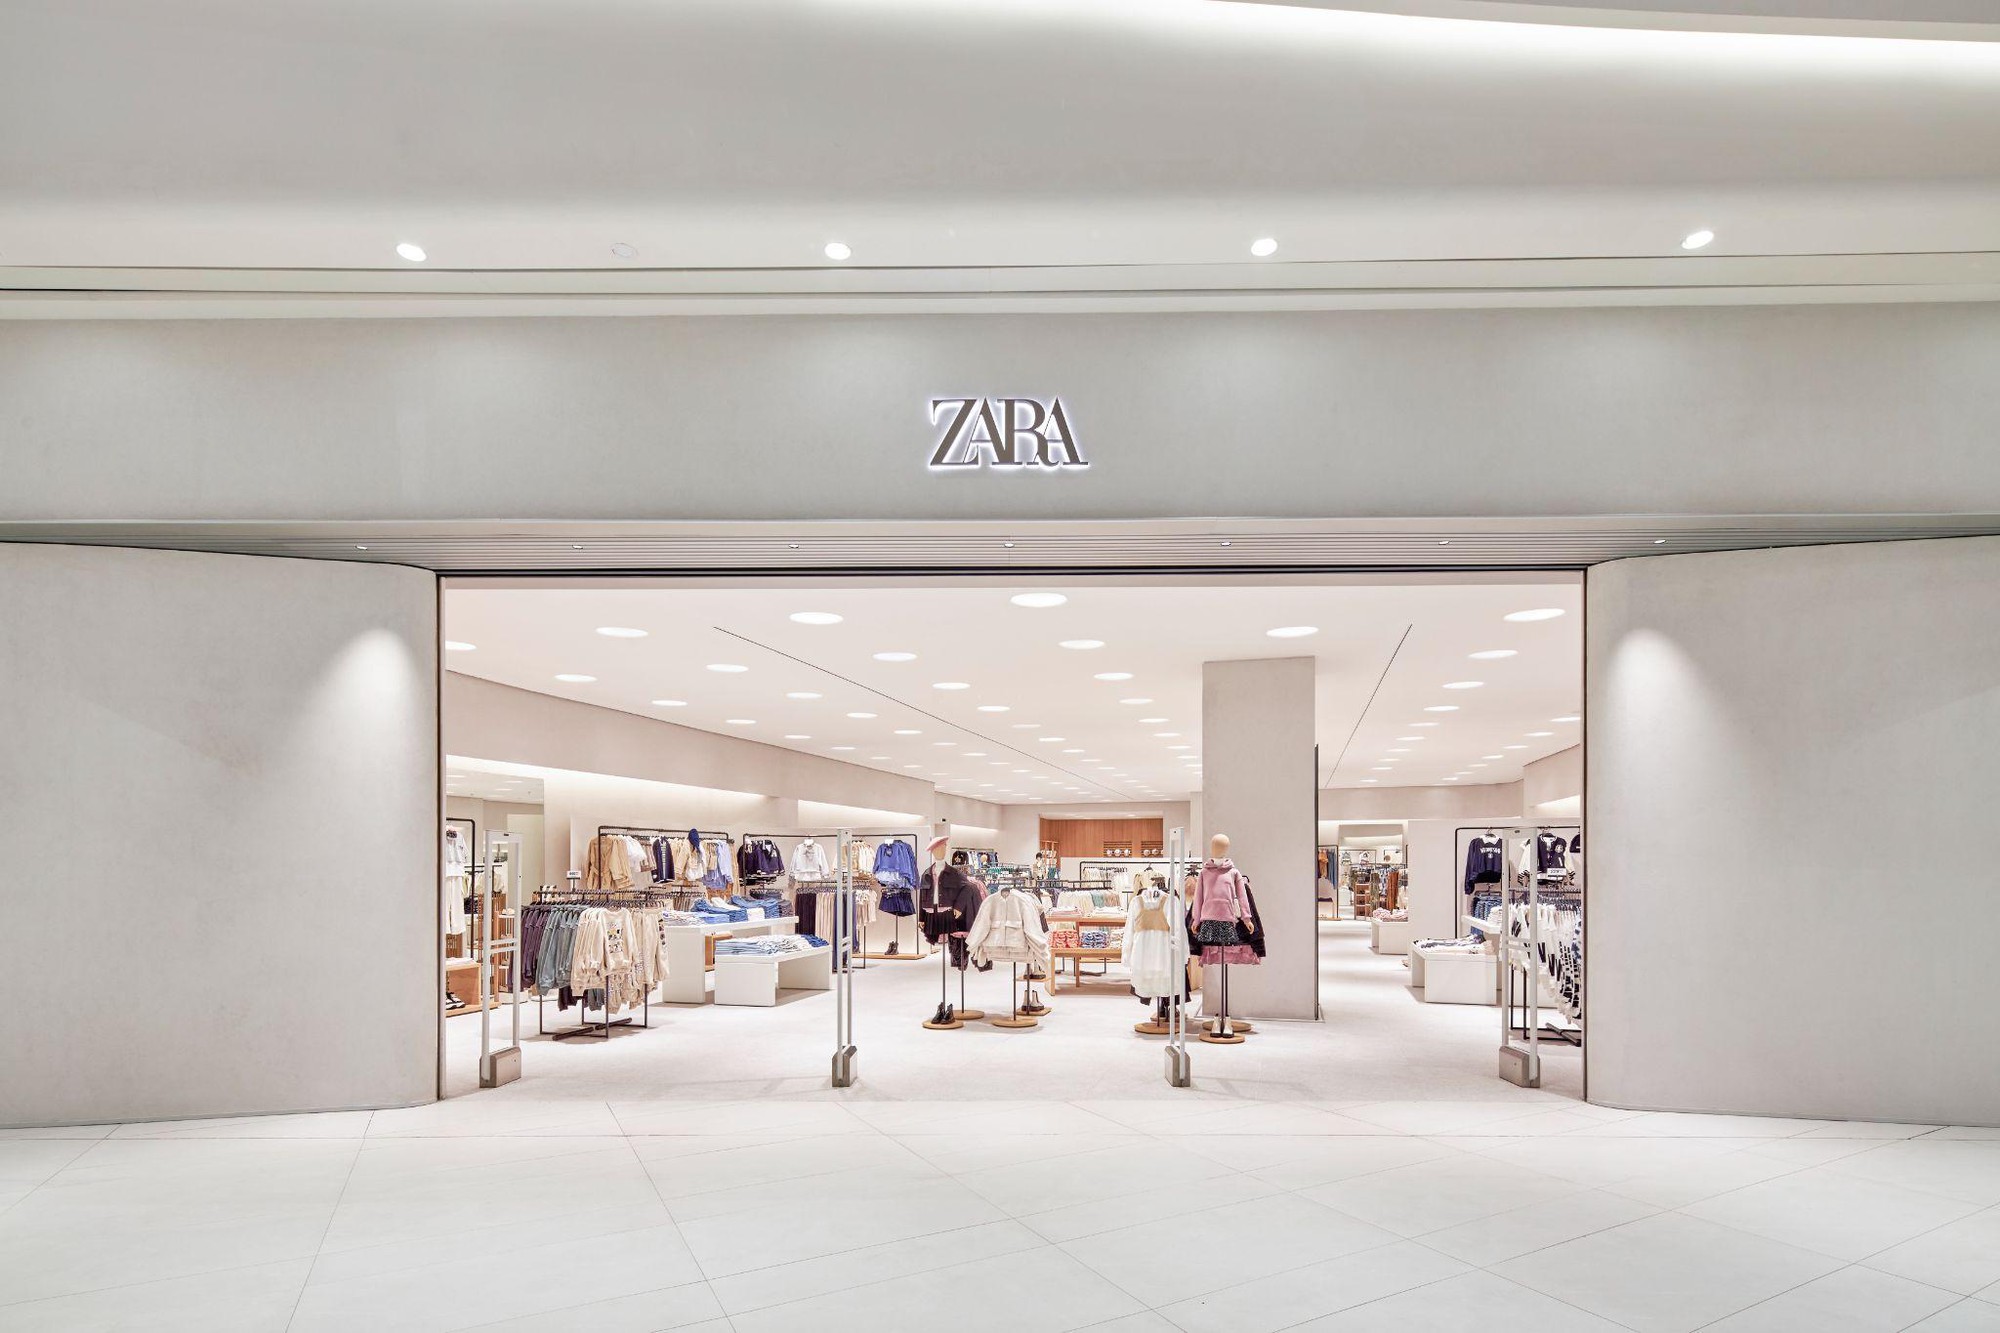 Có gì đáng mong chờ ở cửa hàng Zara thứ hai tại Hà Nội? - Ảnh 1.